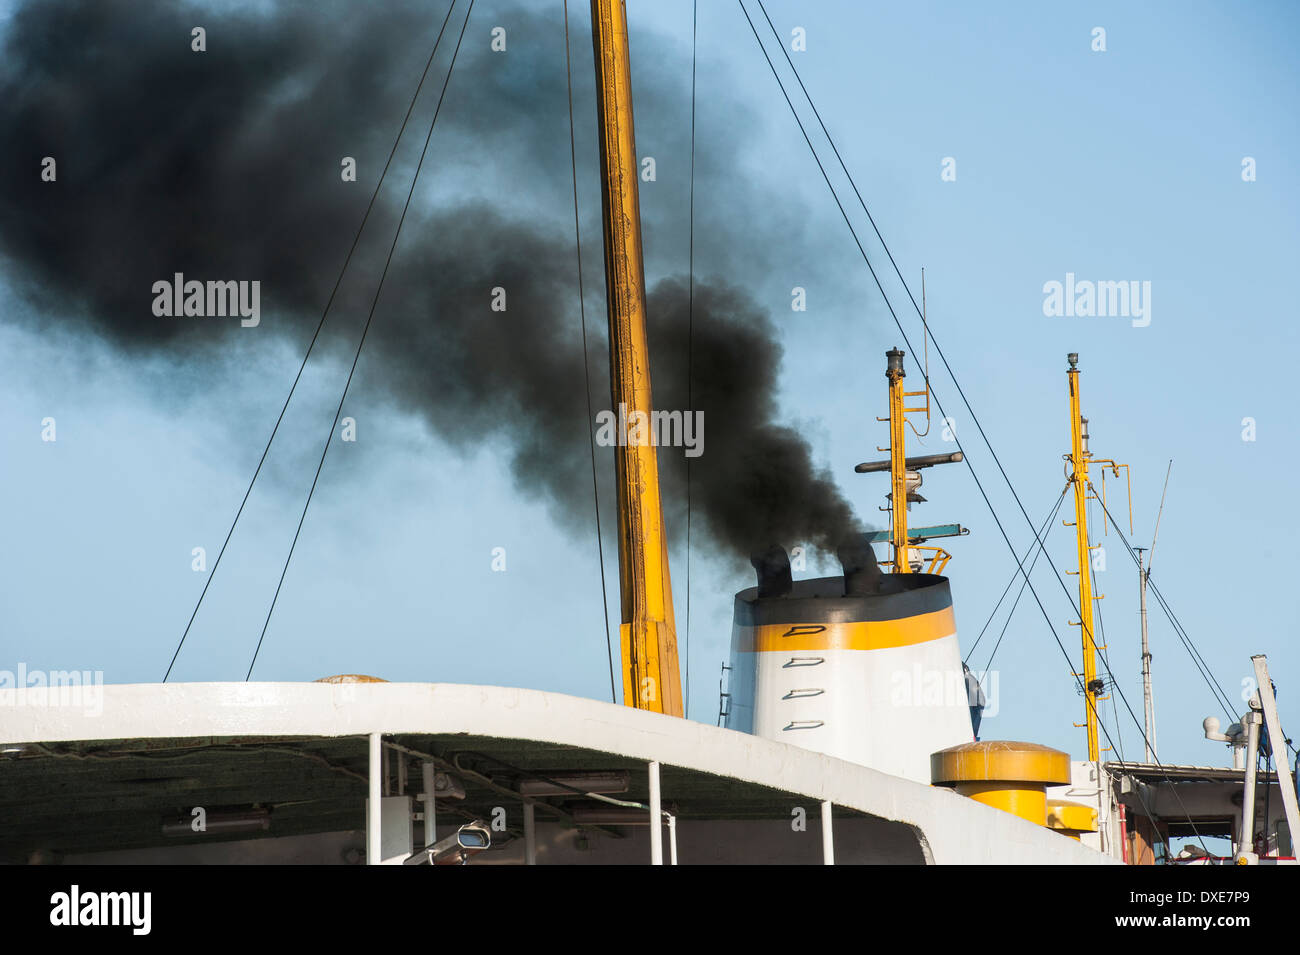 Humo negro procedente del buque pila humo embudo concepto de contaminación del aire Foto de stock